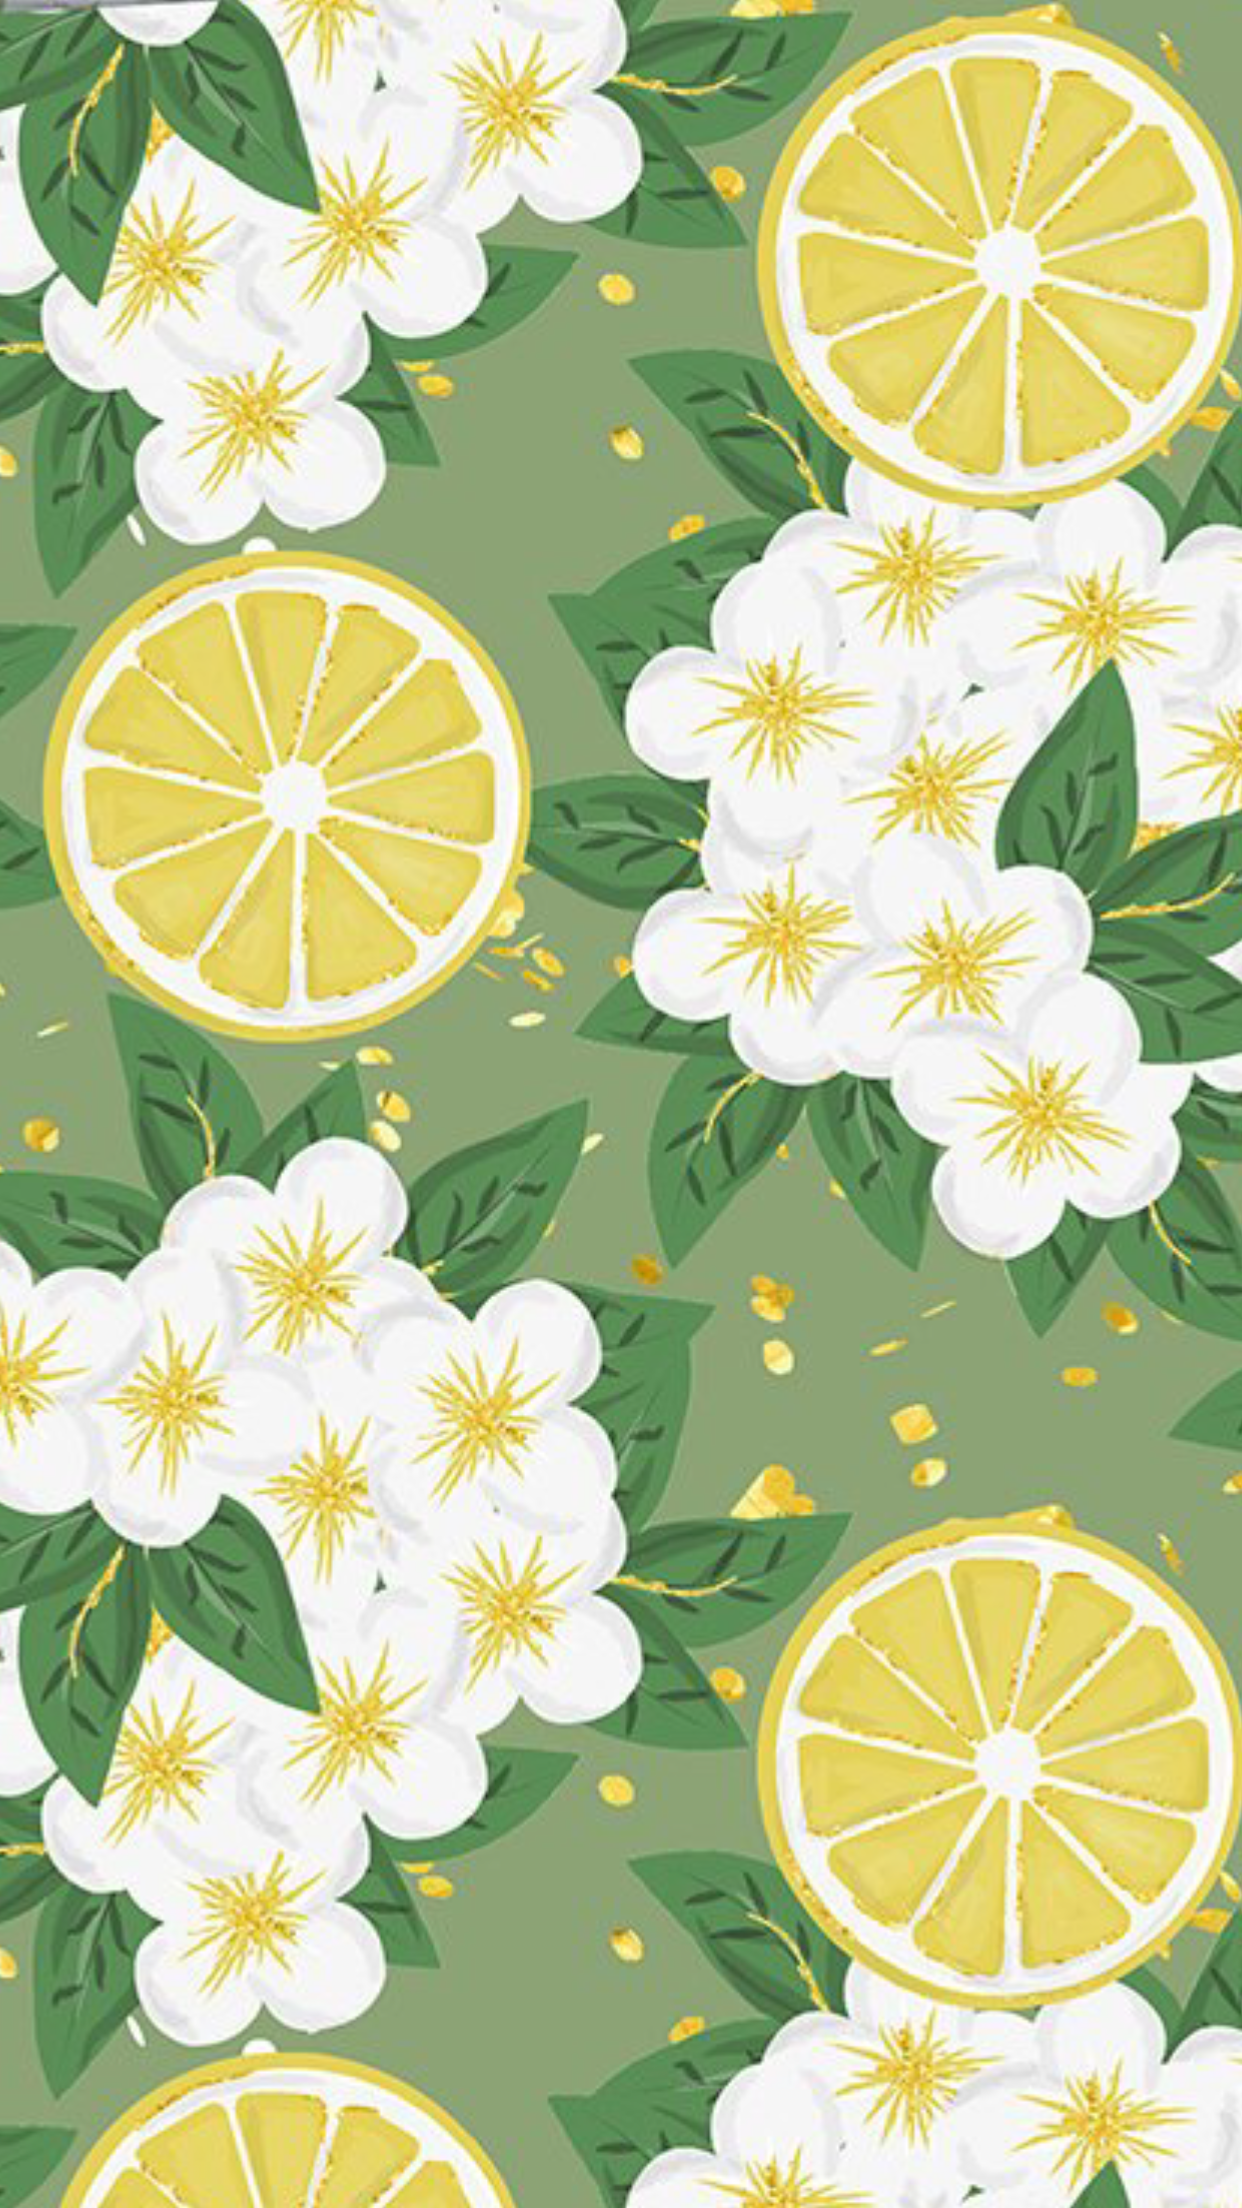 Sommerträume #patterns #wallpaper #dreams #patterns #summer #wallpaper. Fruit wallpaper, Cute background, Summer wallpaper